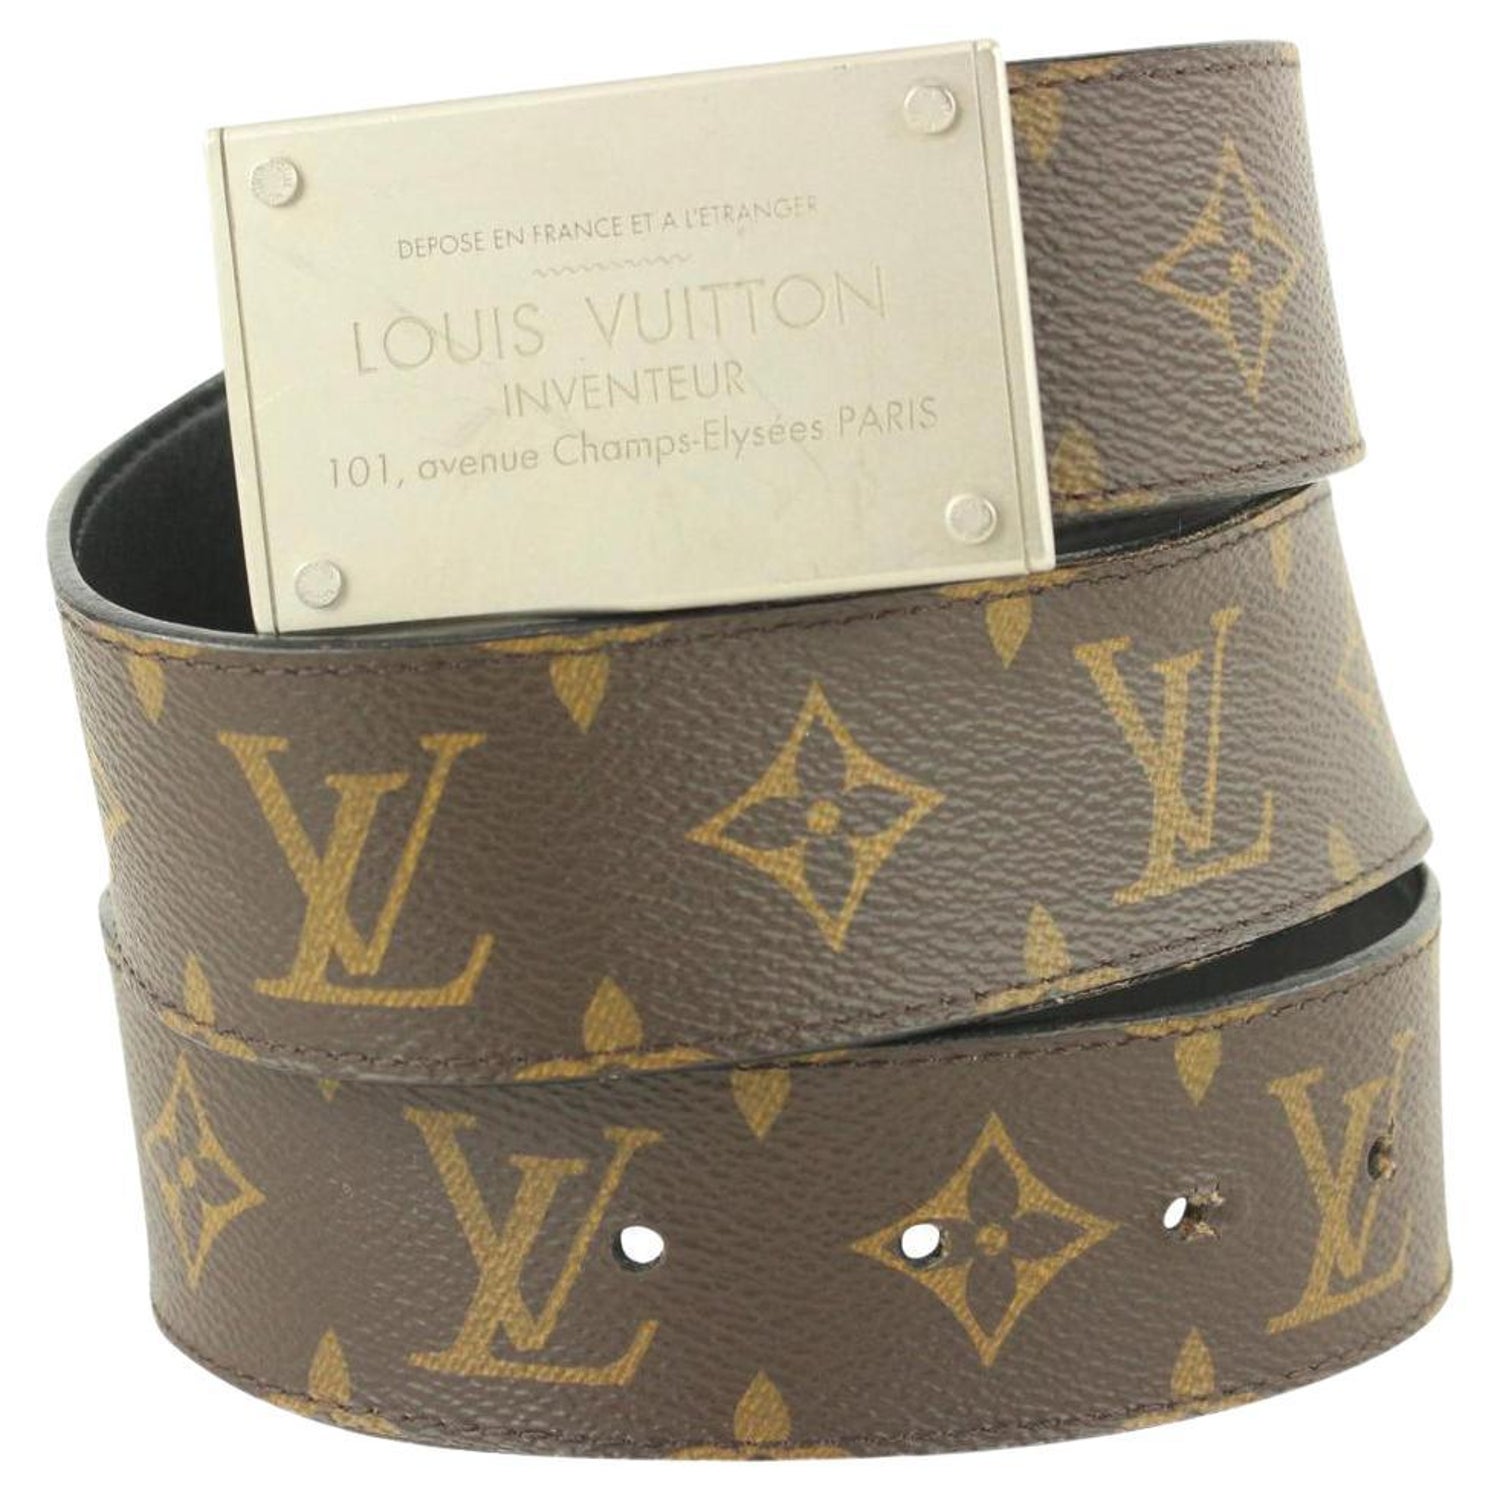 Louis Vuitton Inventeur Shoulder Bag - For Sale on 1stDibs  louis vuitton  inventeur bag serial number, lv inventeur bag, louis vuitton inventeur bag